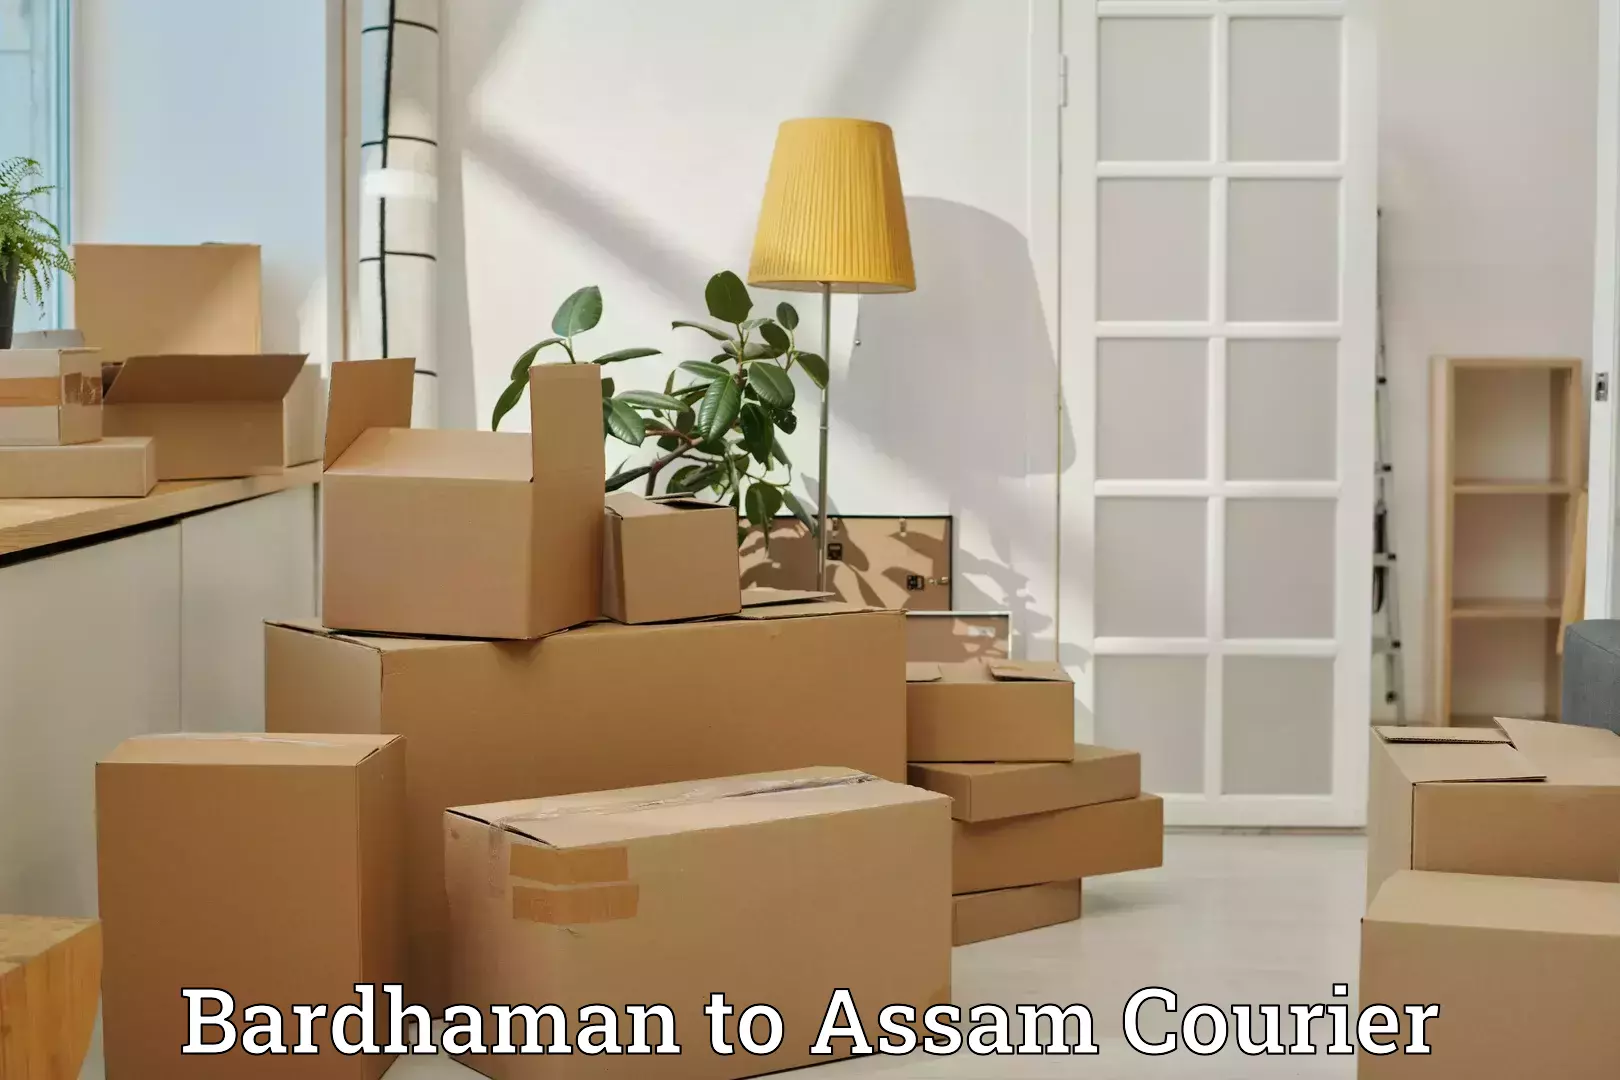 Luggage shipment tracking Bardhaman to Assam